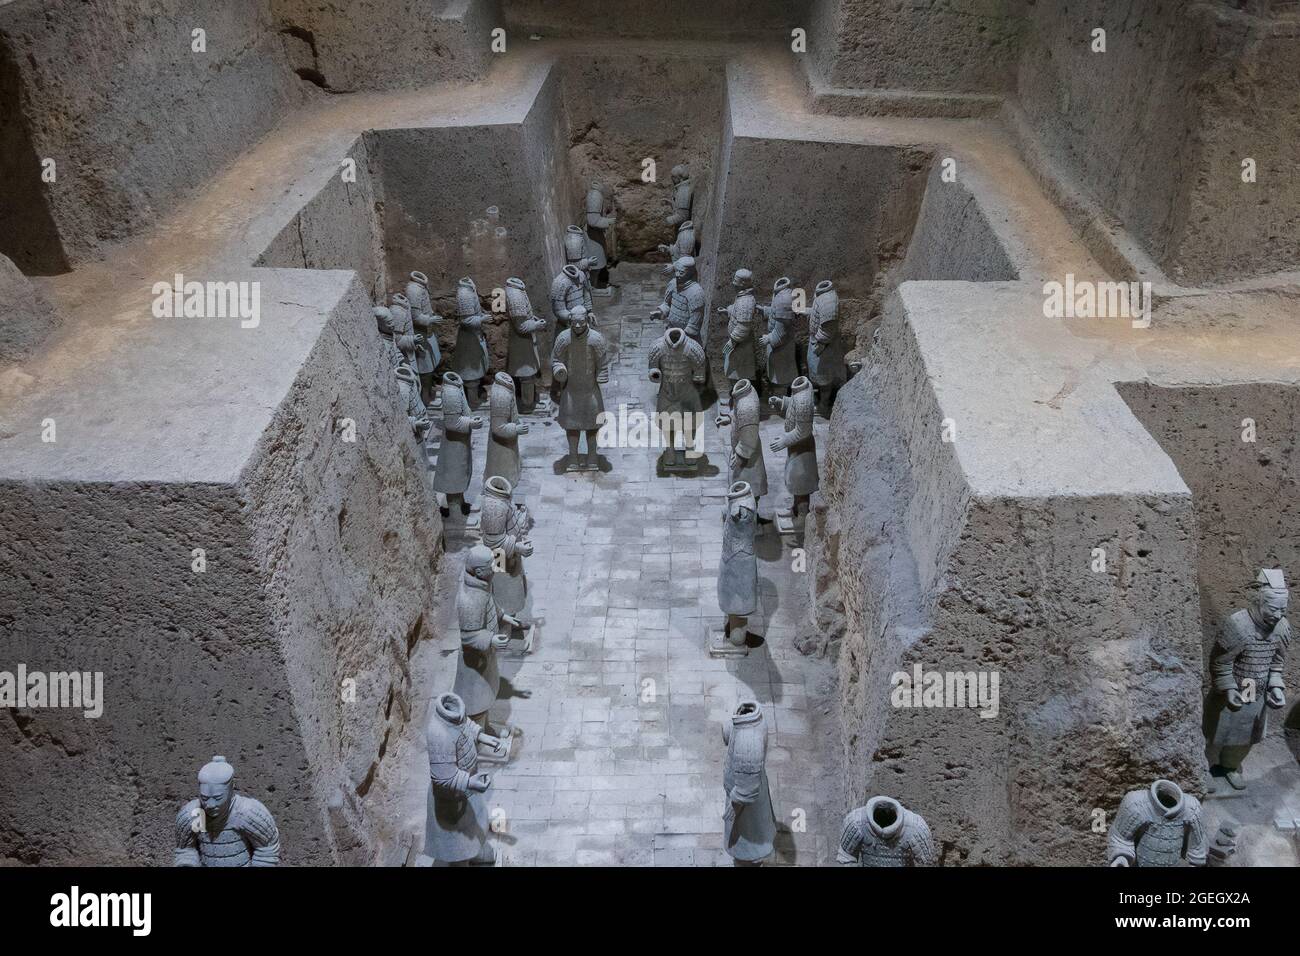 Soldati di terracotta nella tomba del primo imperatore della dinastia Qin dei guerrieri di terracotta nella contea di Lintong, Shaanxi, Xi'an, Cina, Asia Foto Stock